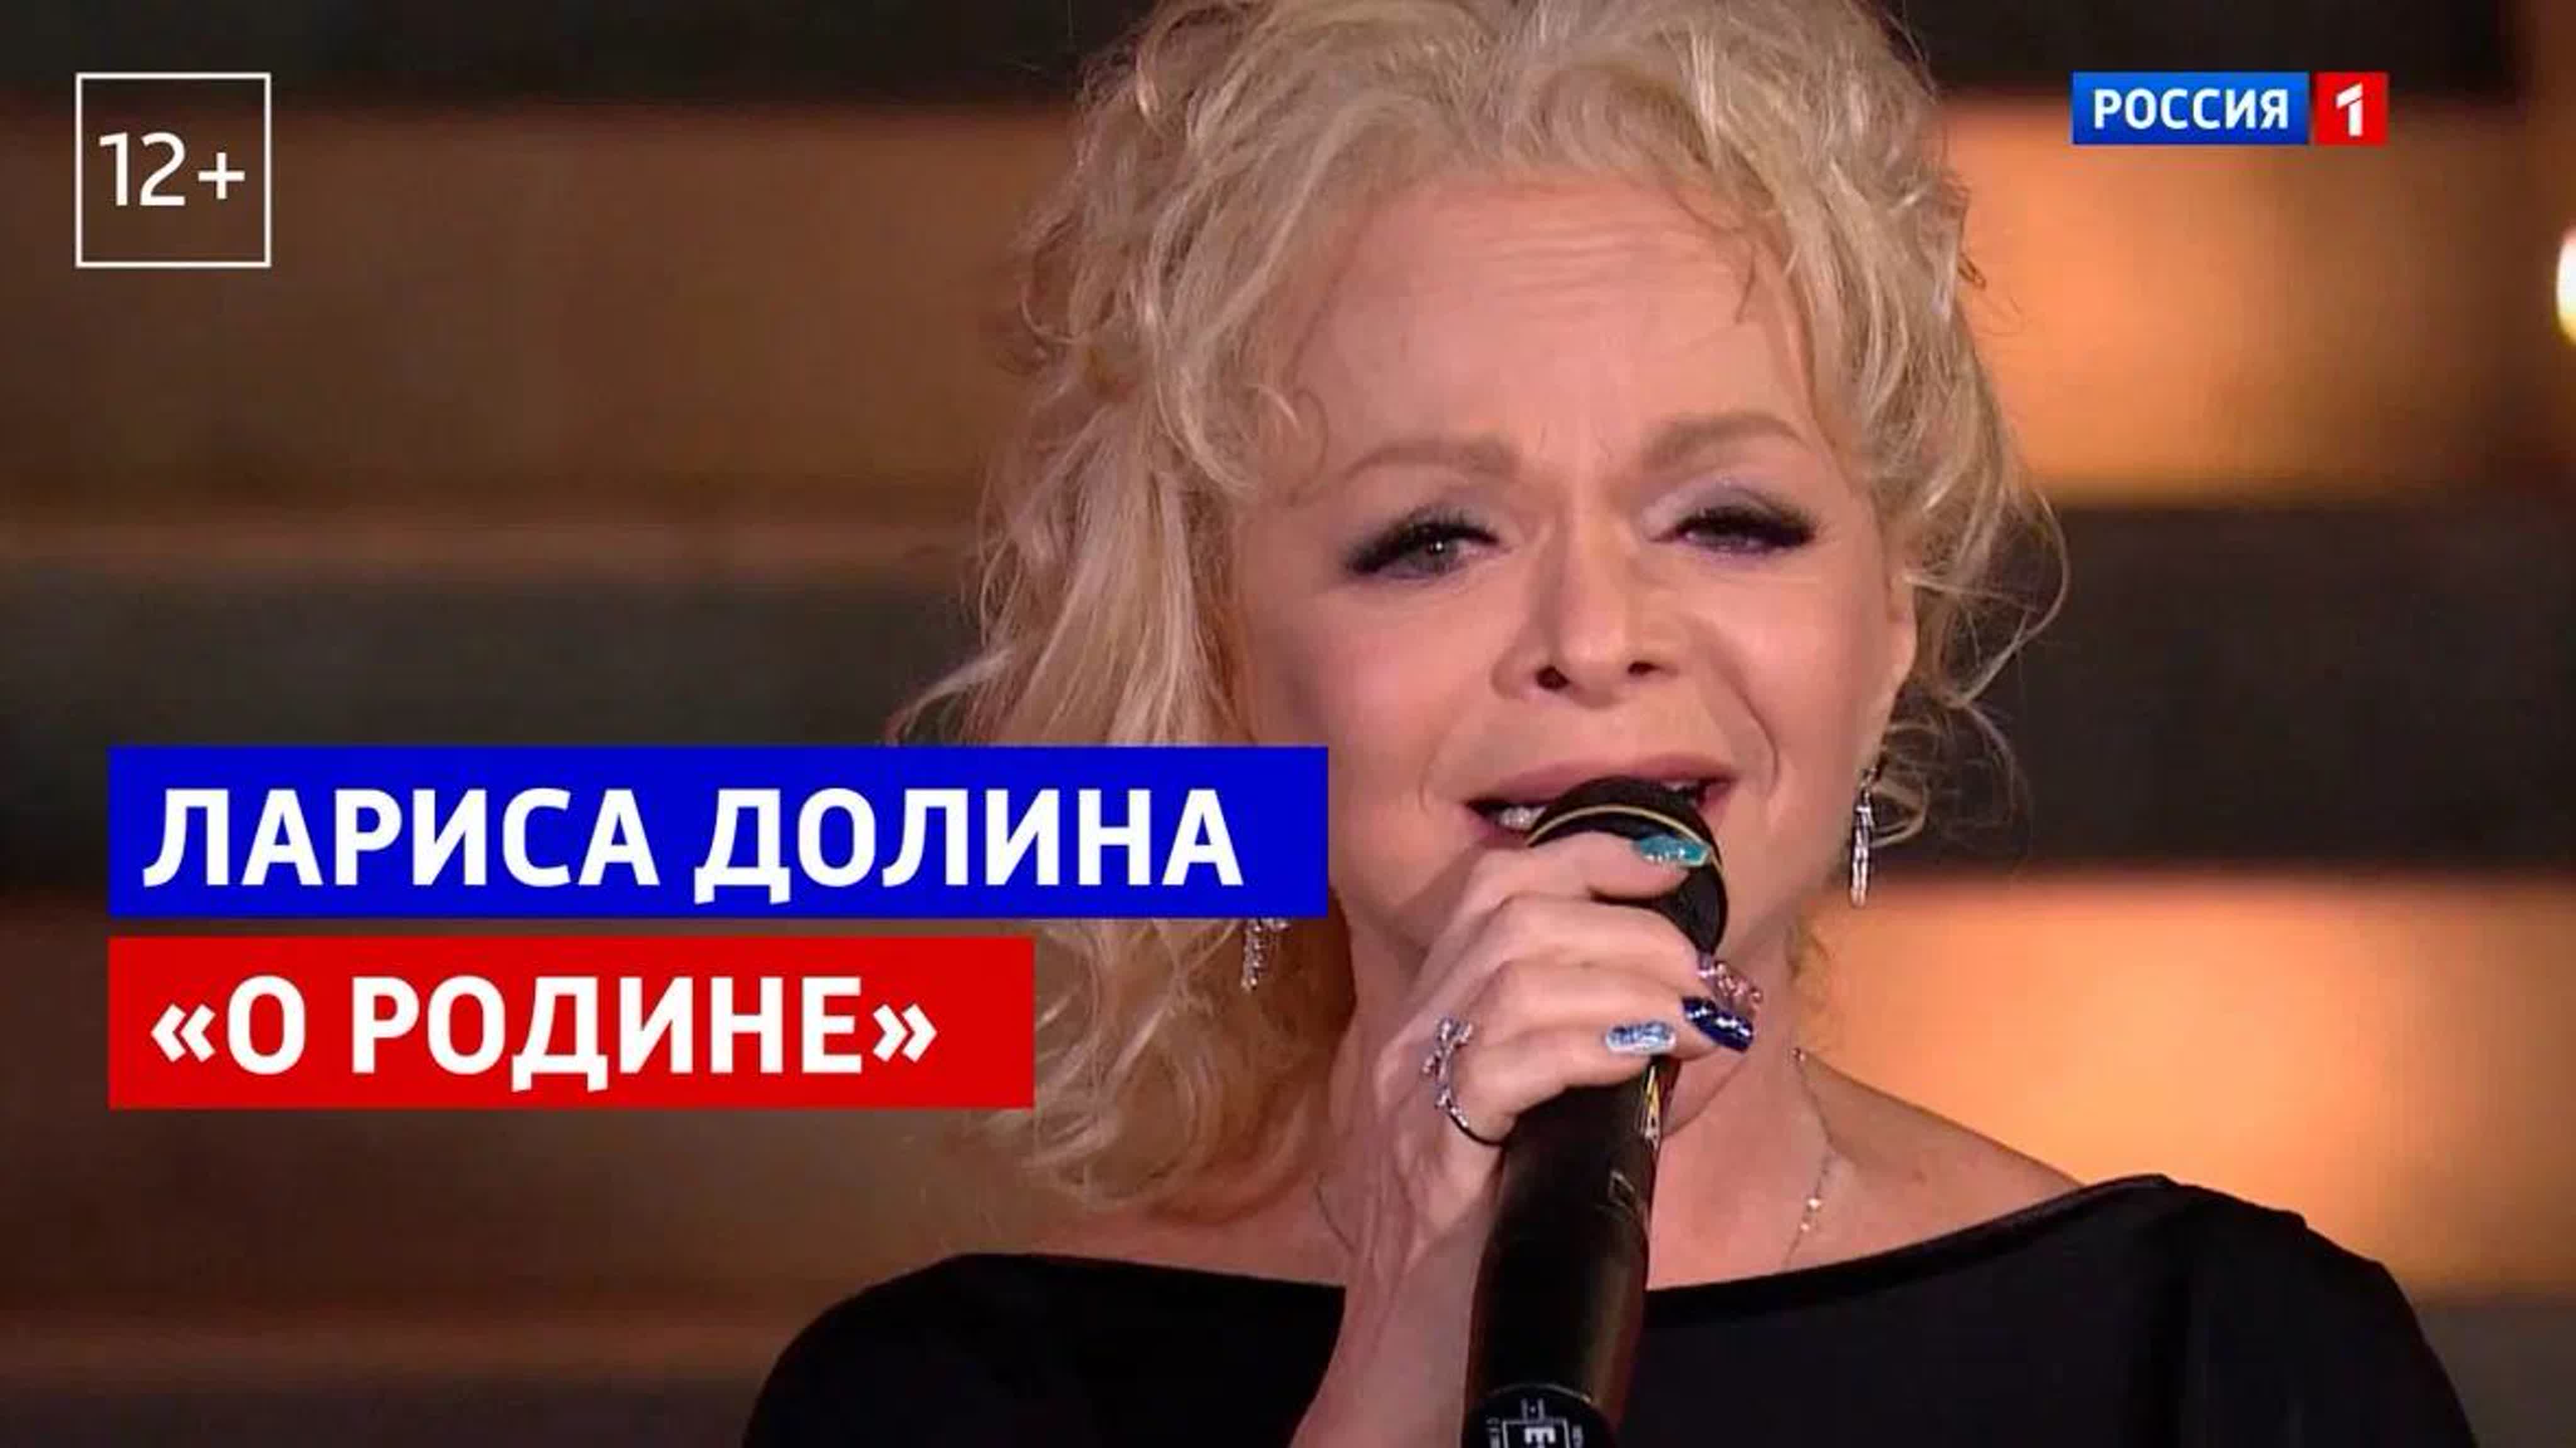 Концерт к 80-летию освобождения Луганска от фашистов